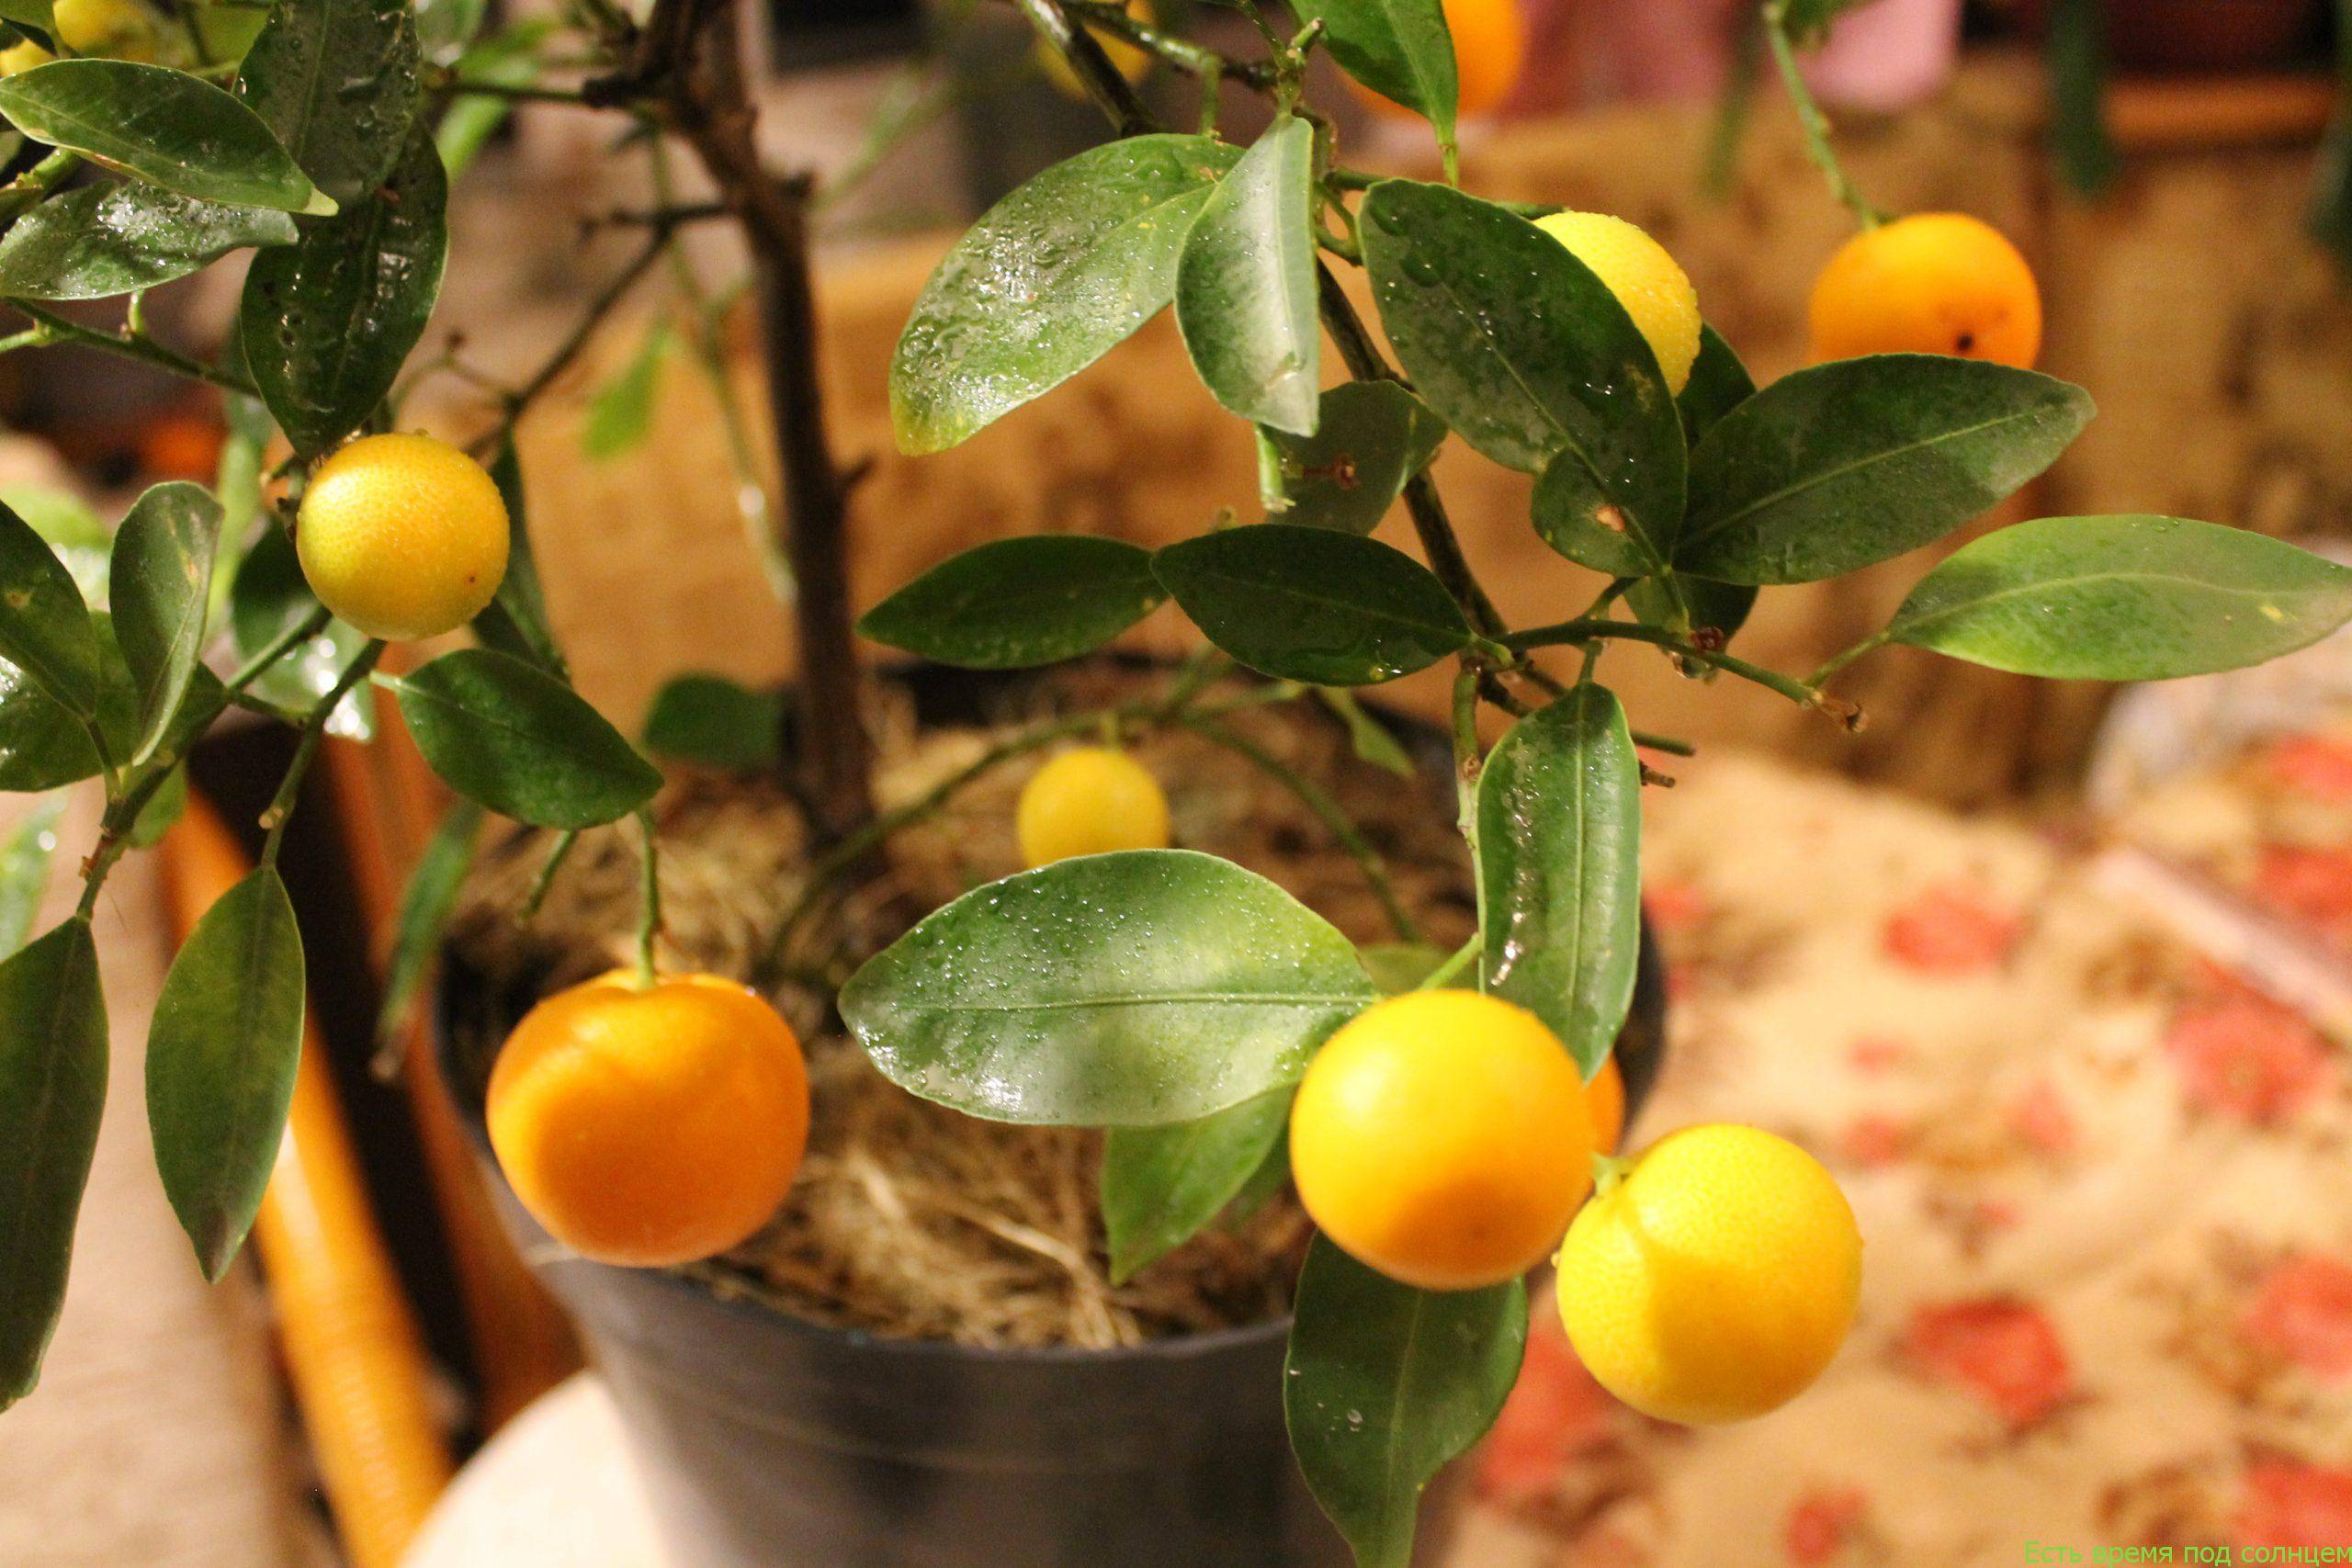 Как вырастить мандарин: особенности ухода за мандариновым деревом в домашних условиях